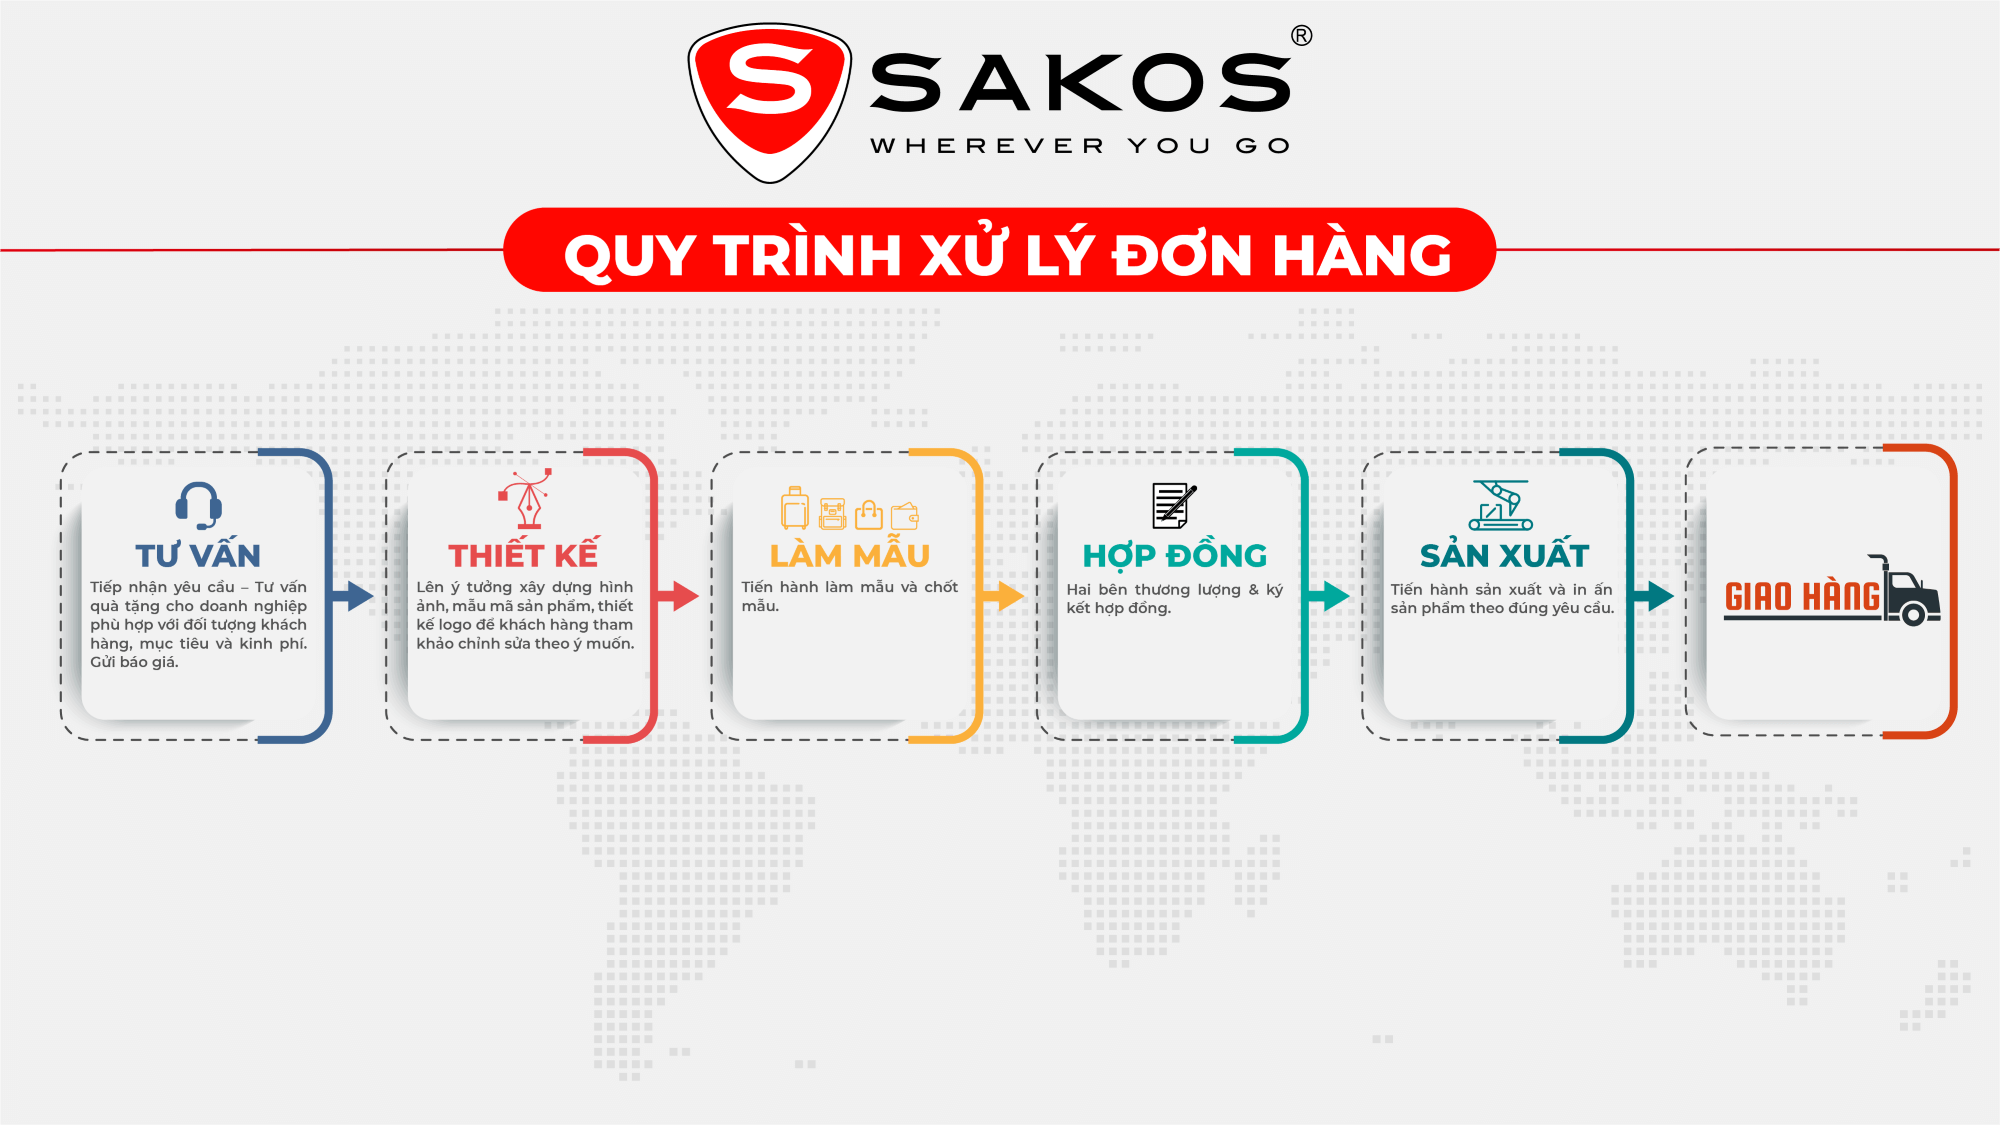 Sakos - B2B - Quà tặng doanh nghiệp